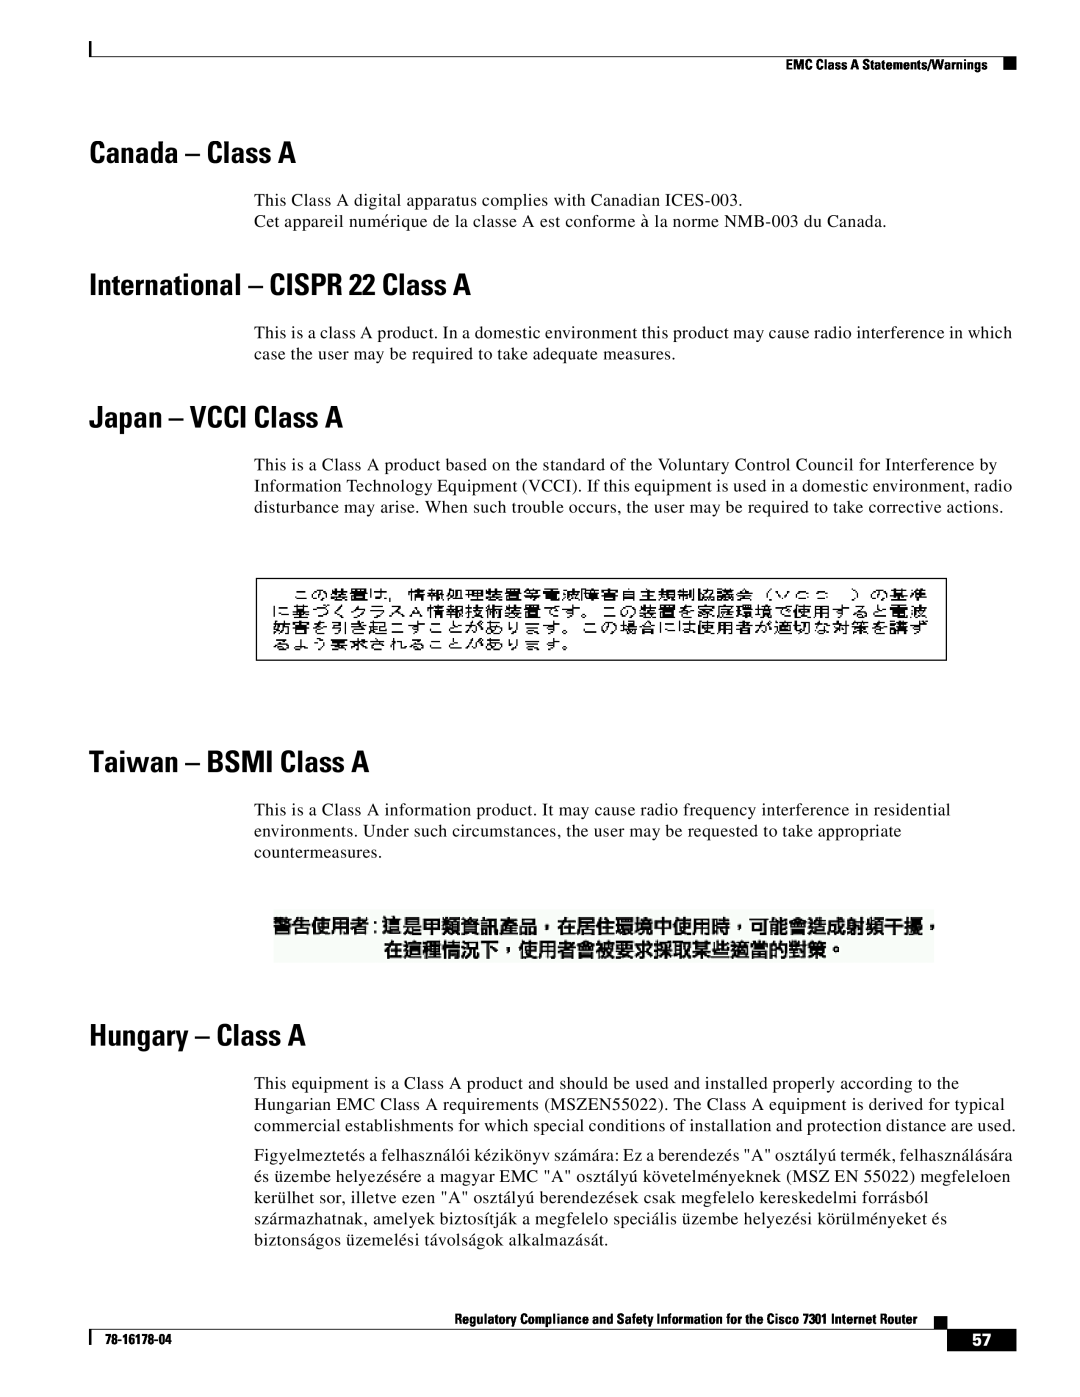 Cisco Systems CISCO7301 Canada - Class A, International - CISPR 22 Class A, Japan - VCCI Class A, Taiwan - BSMI Class A 